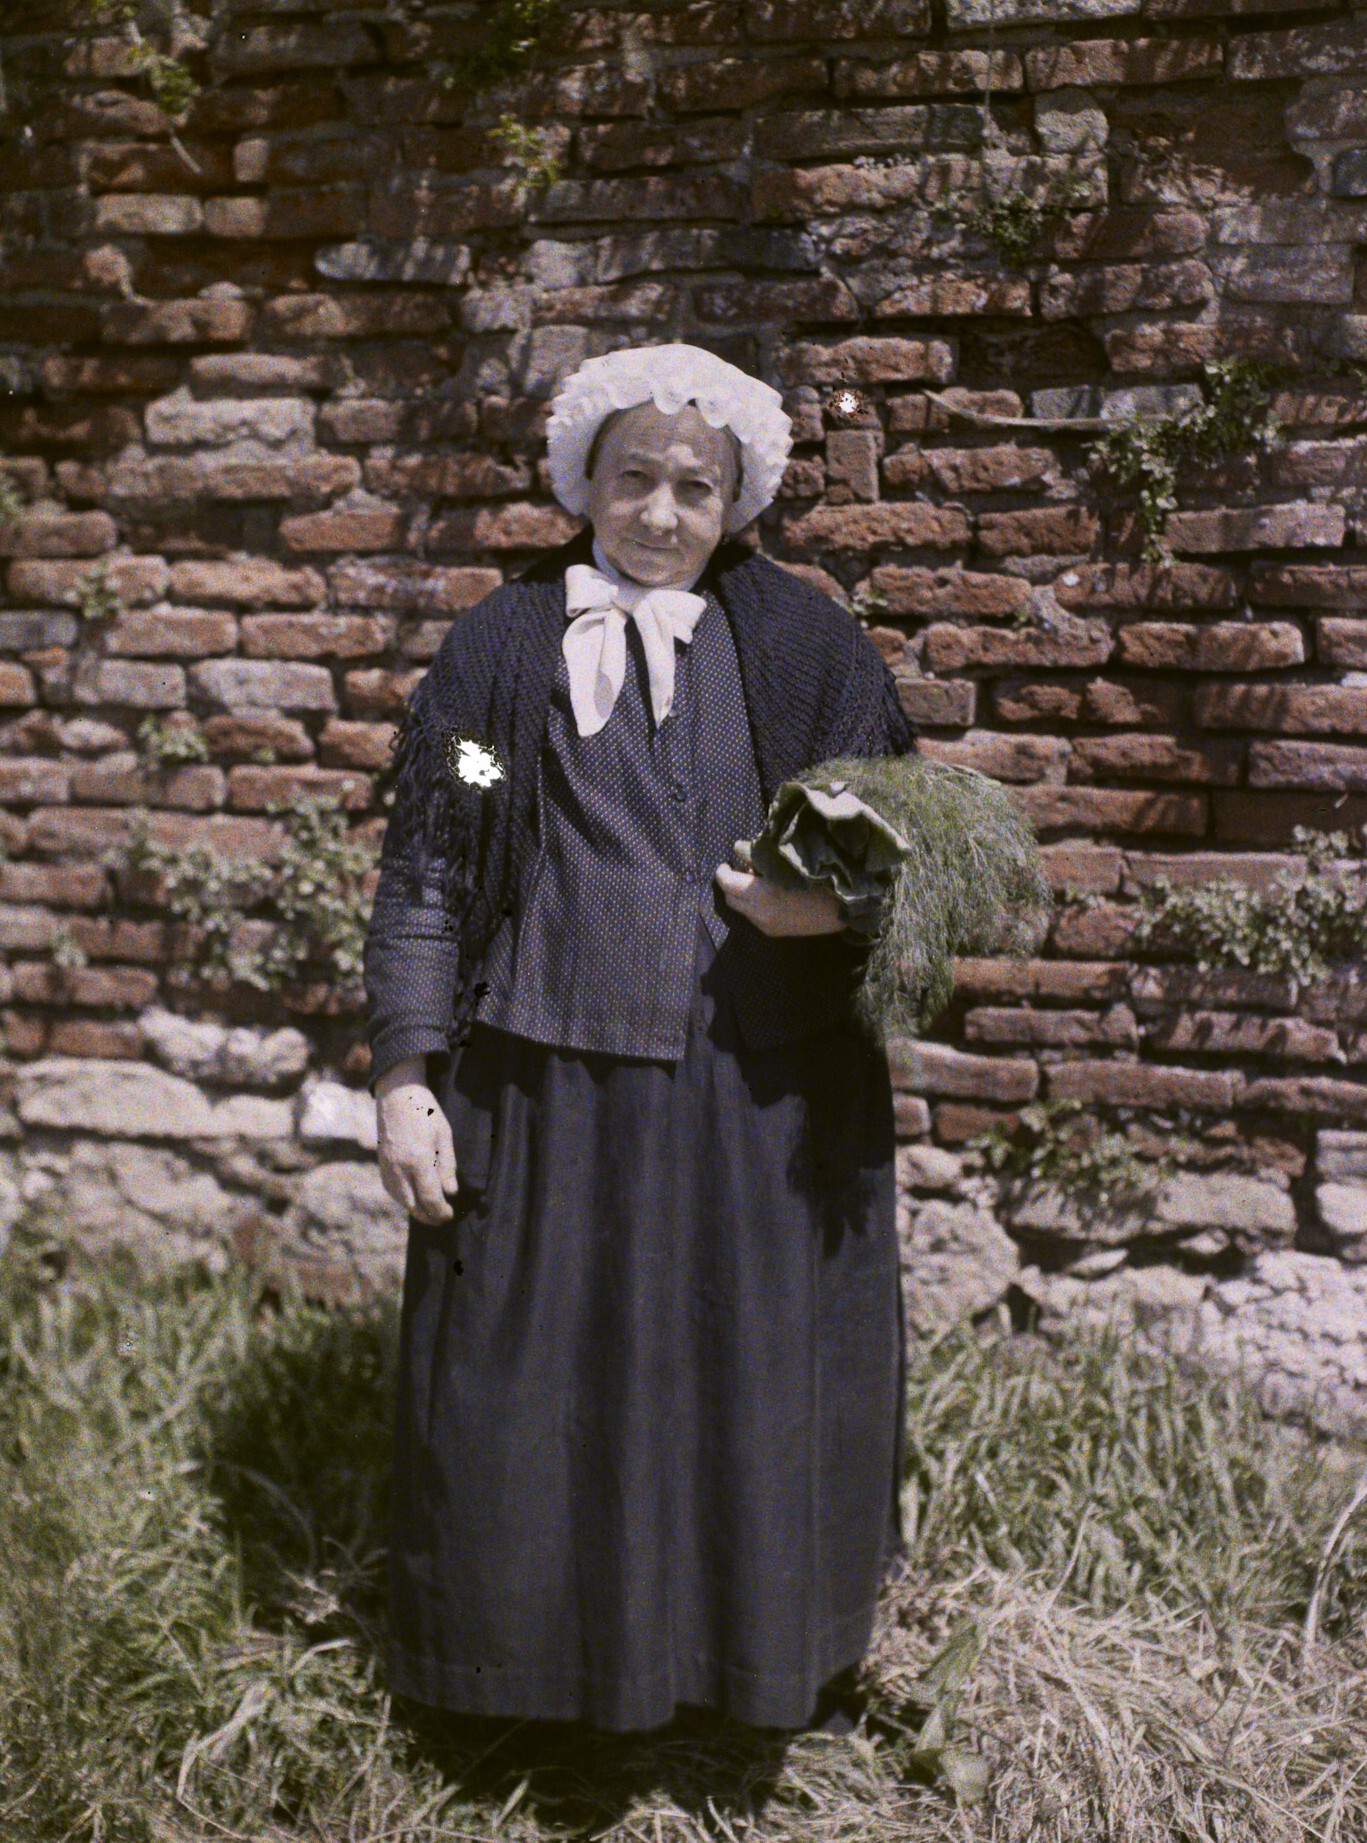 Альби, Тарн, Юг-Пиренеи, Франция. Старуха в кепке с кантом из альбигойского региона, 1916 год, автор Огюст Леон (автохром)